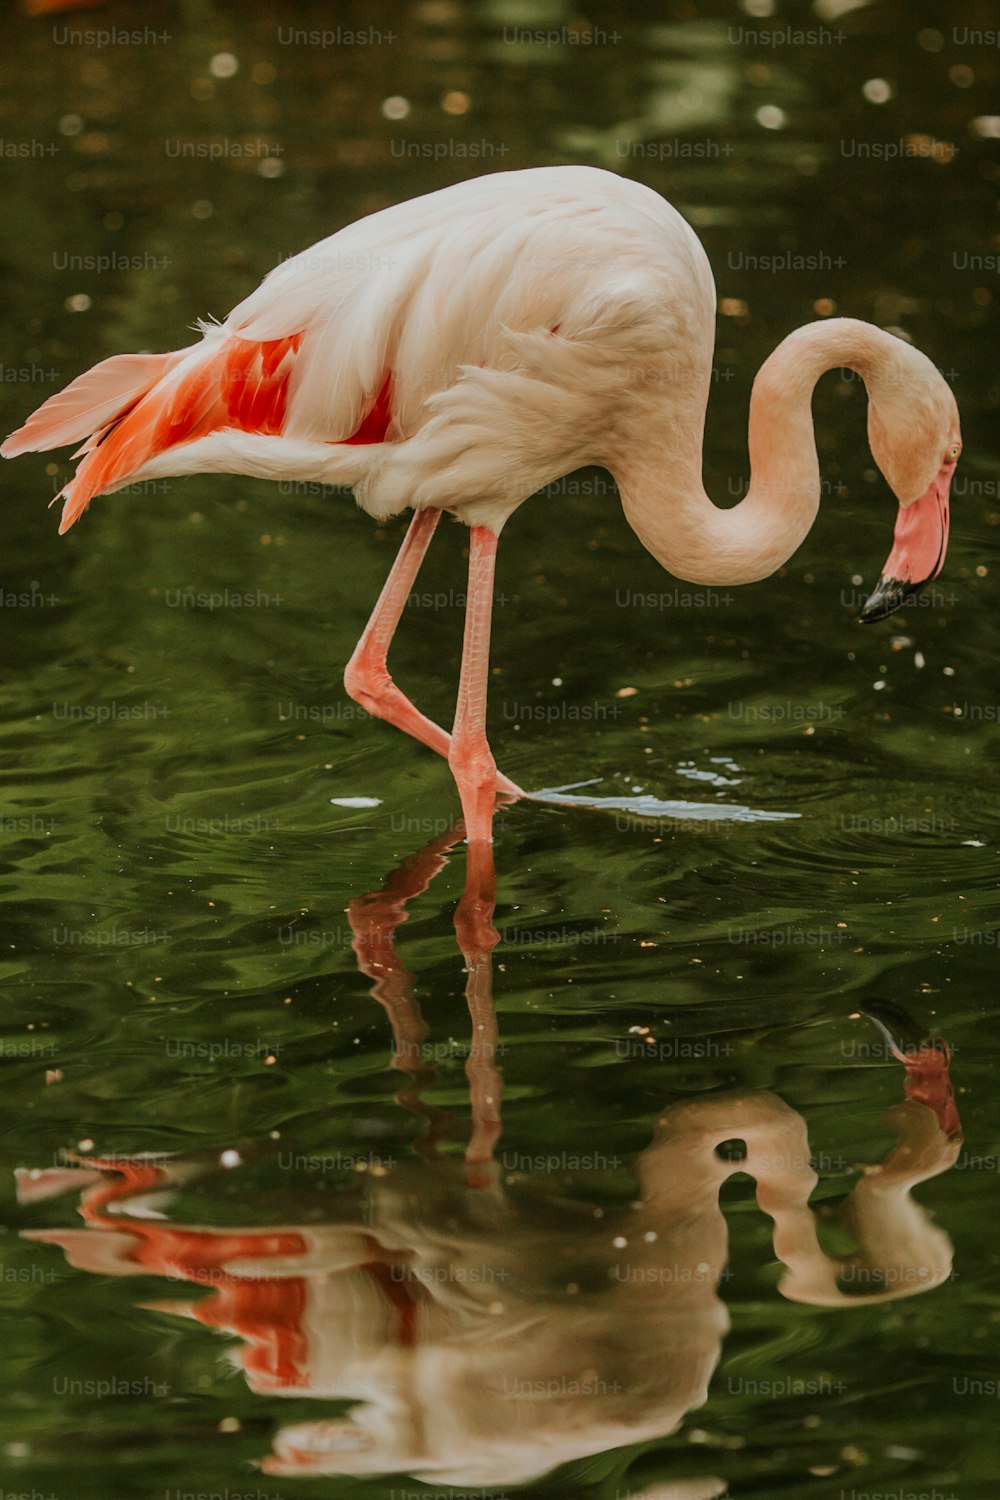 Un flamant rose et un bébé oiseau dans un étang